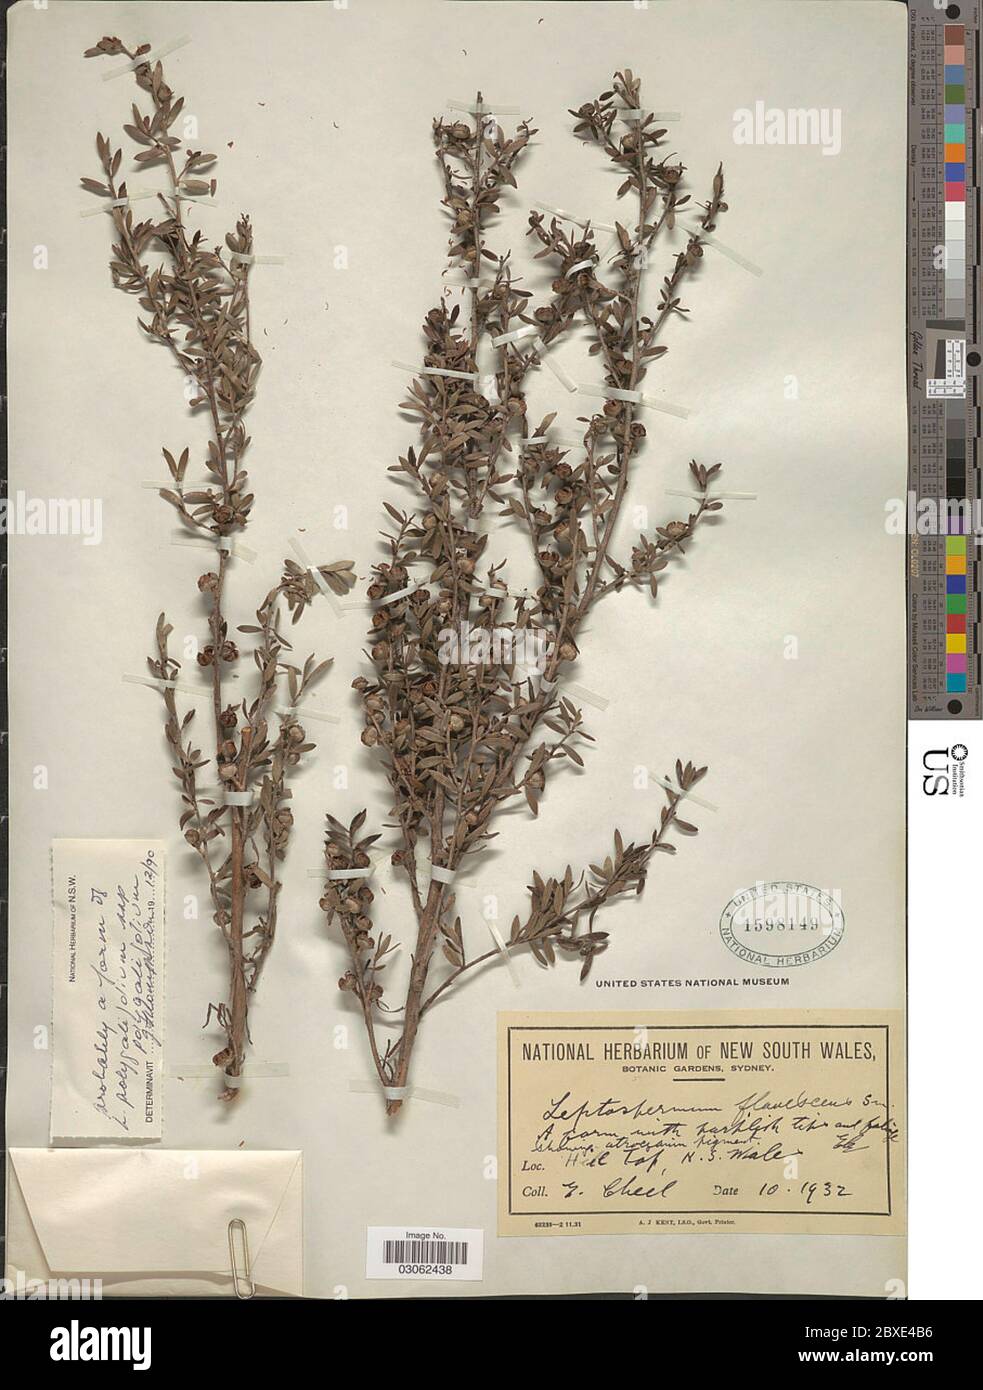 Leptospermum polygalifolium Salisb subsp polygalifolium Leptospermum polygalifolium Salisb subsp polygalifolium. Stock Photo